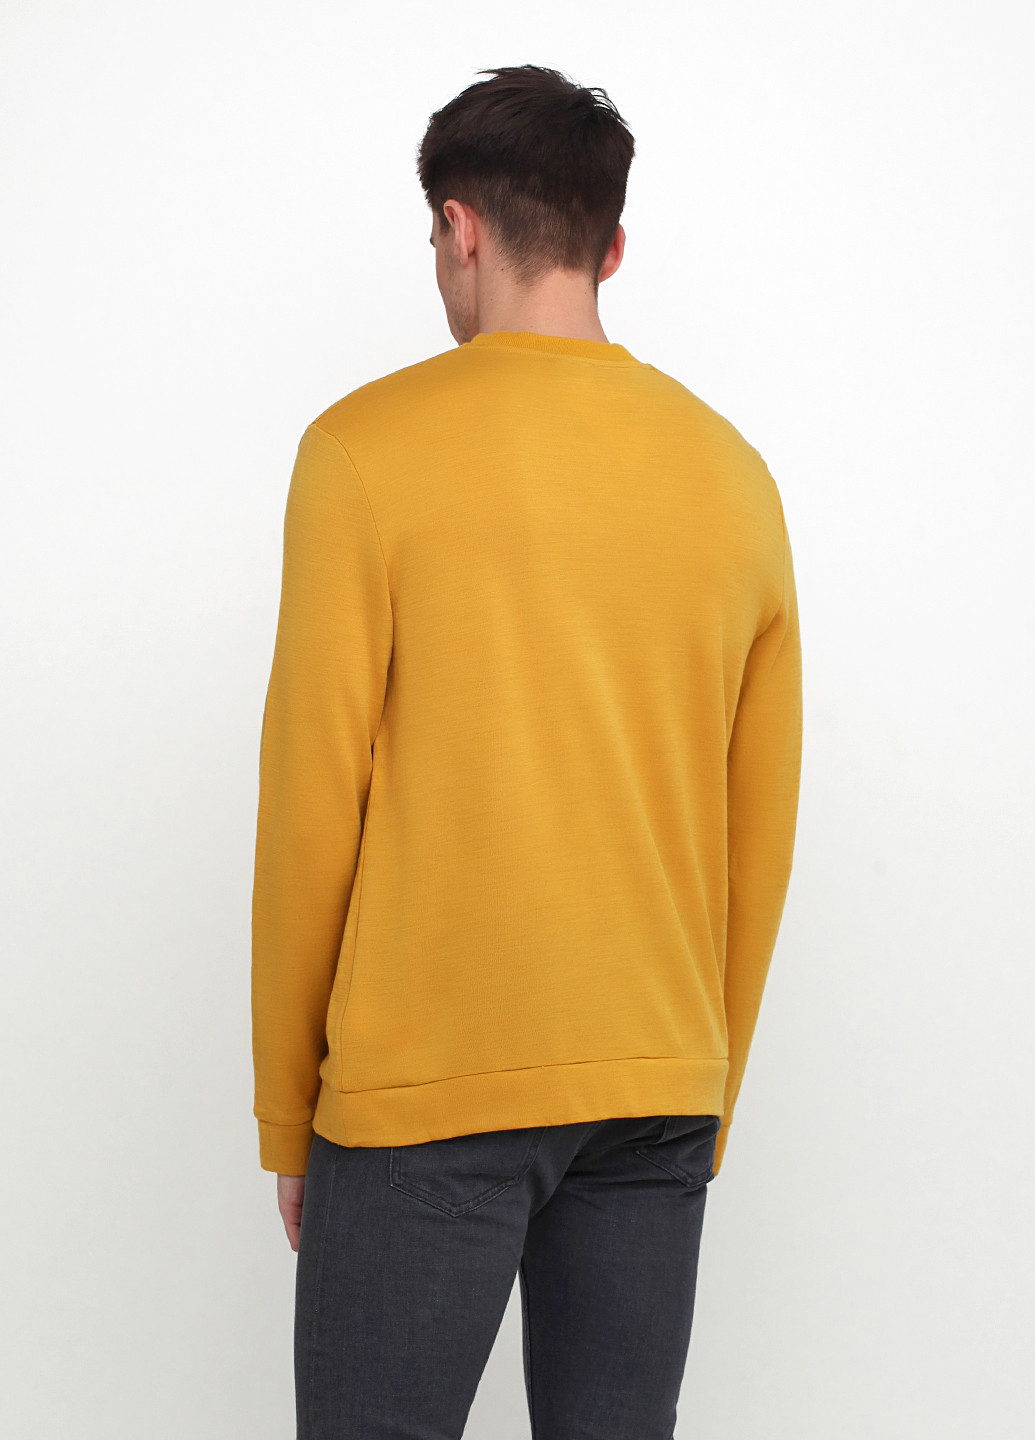 Желтый демисезонный пуловер пуловер Cos